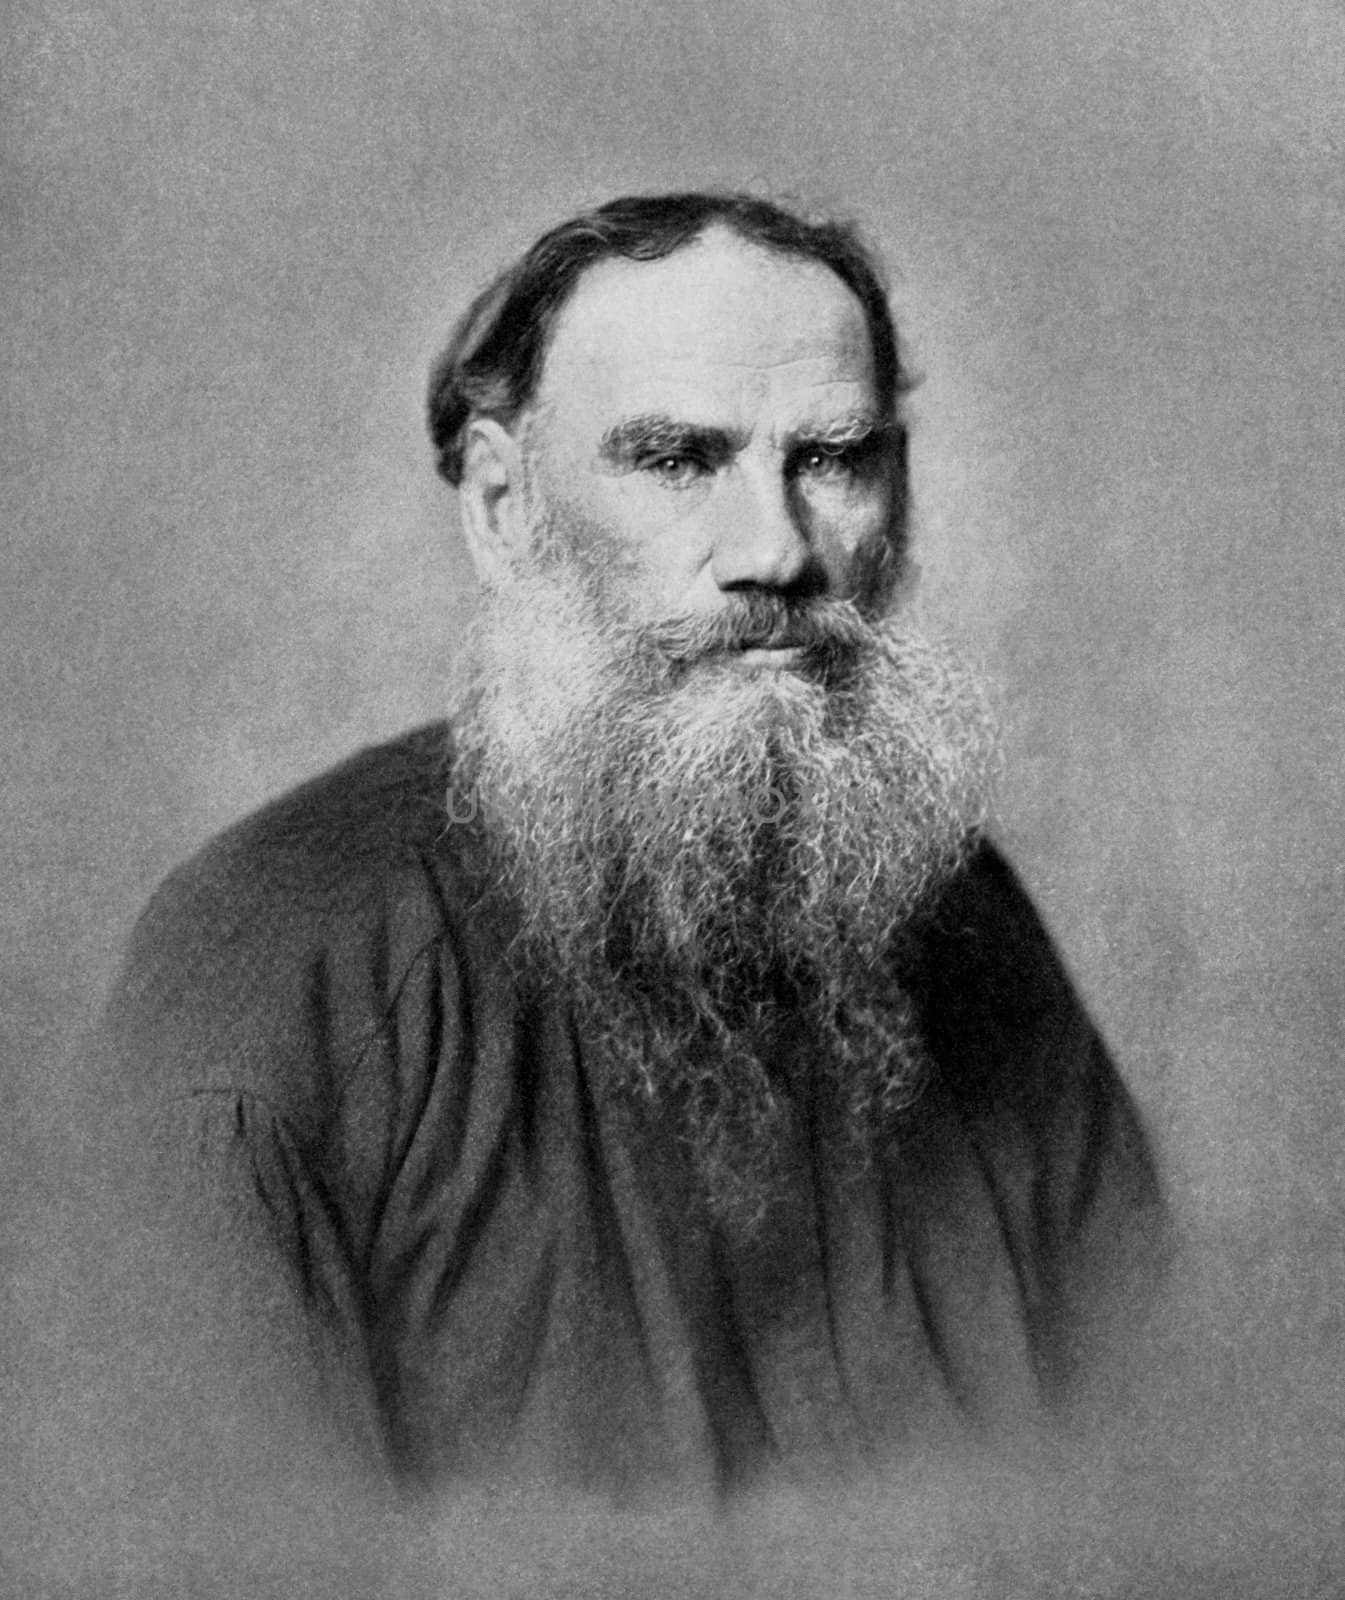 Leo Tolstoy by Georgios